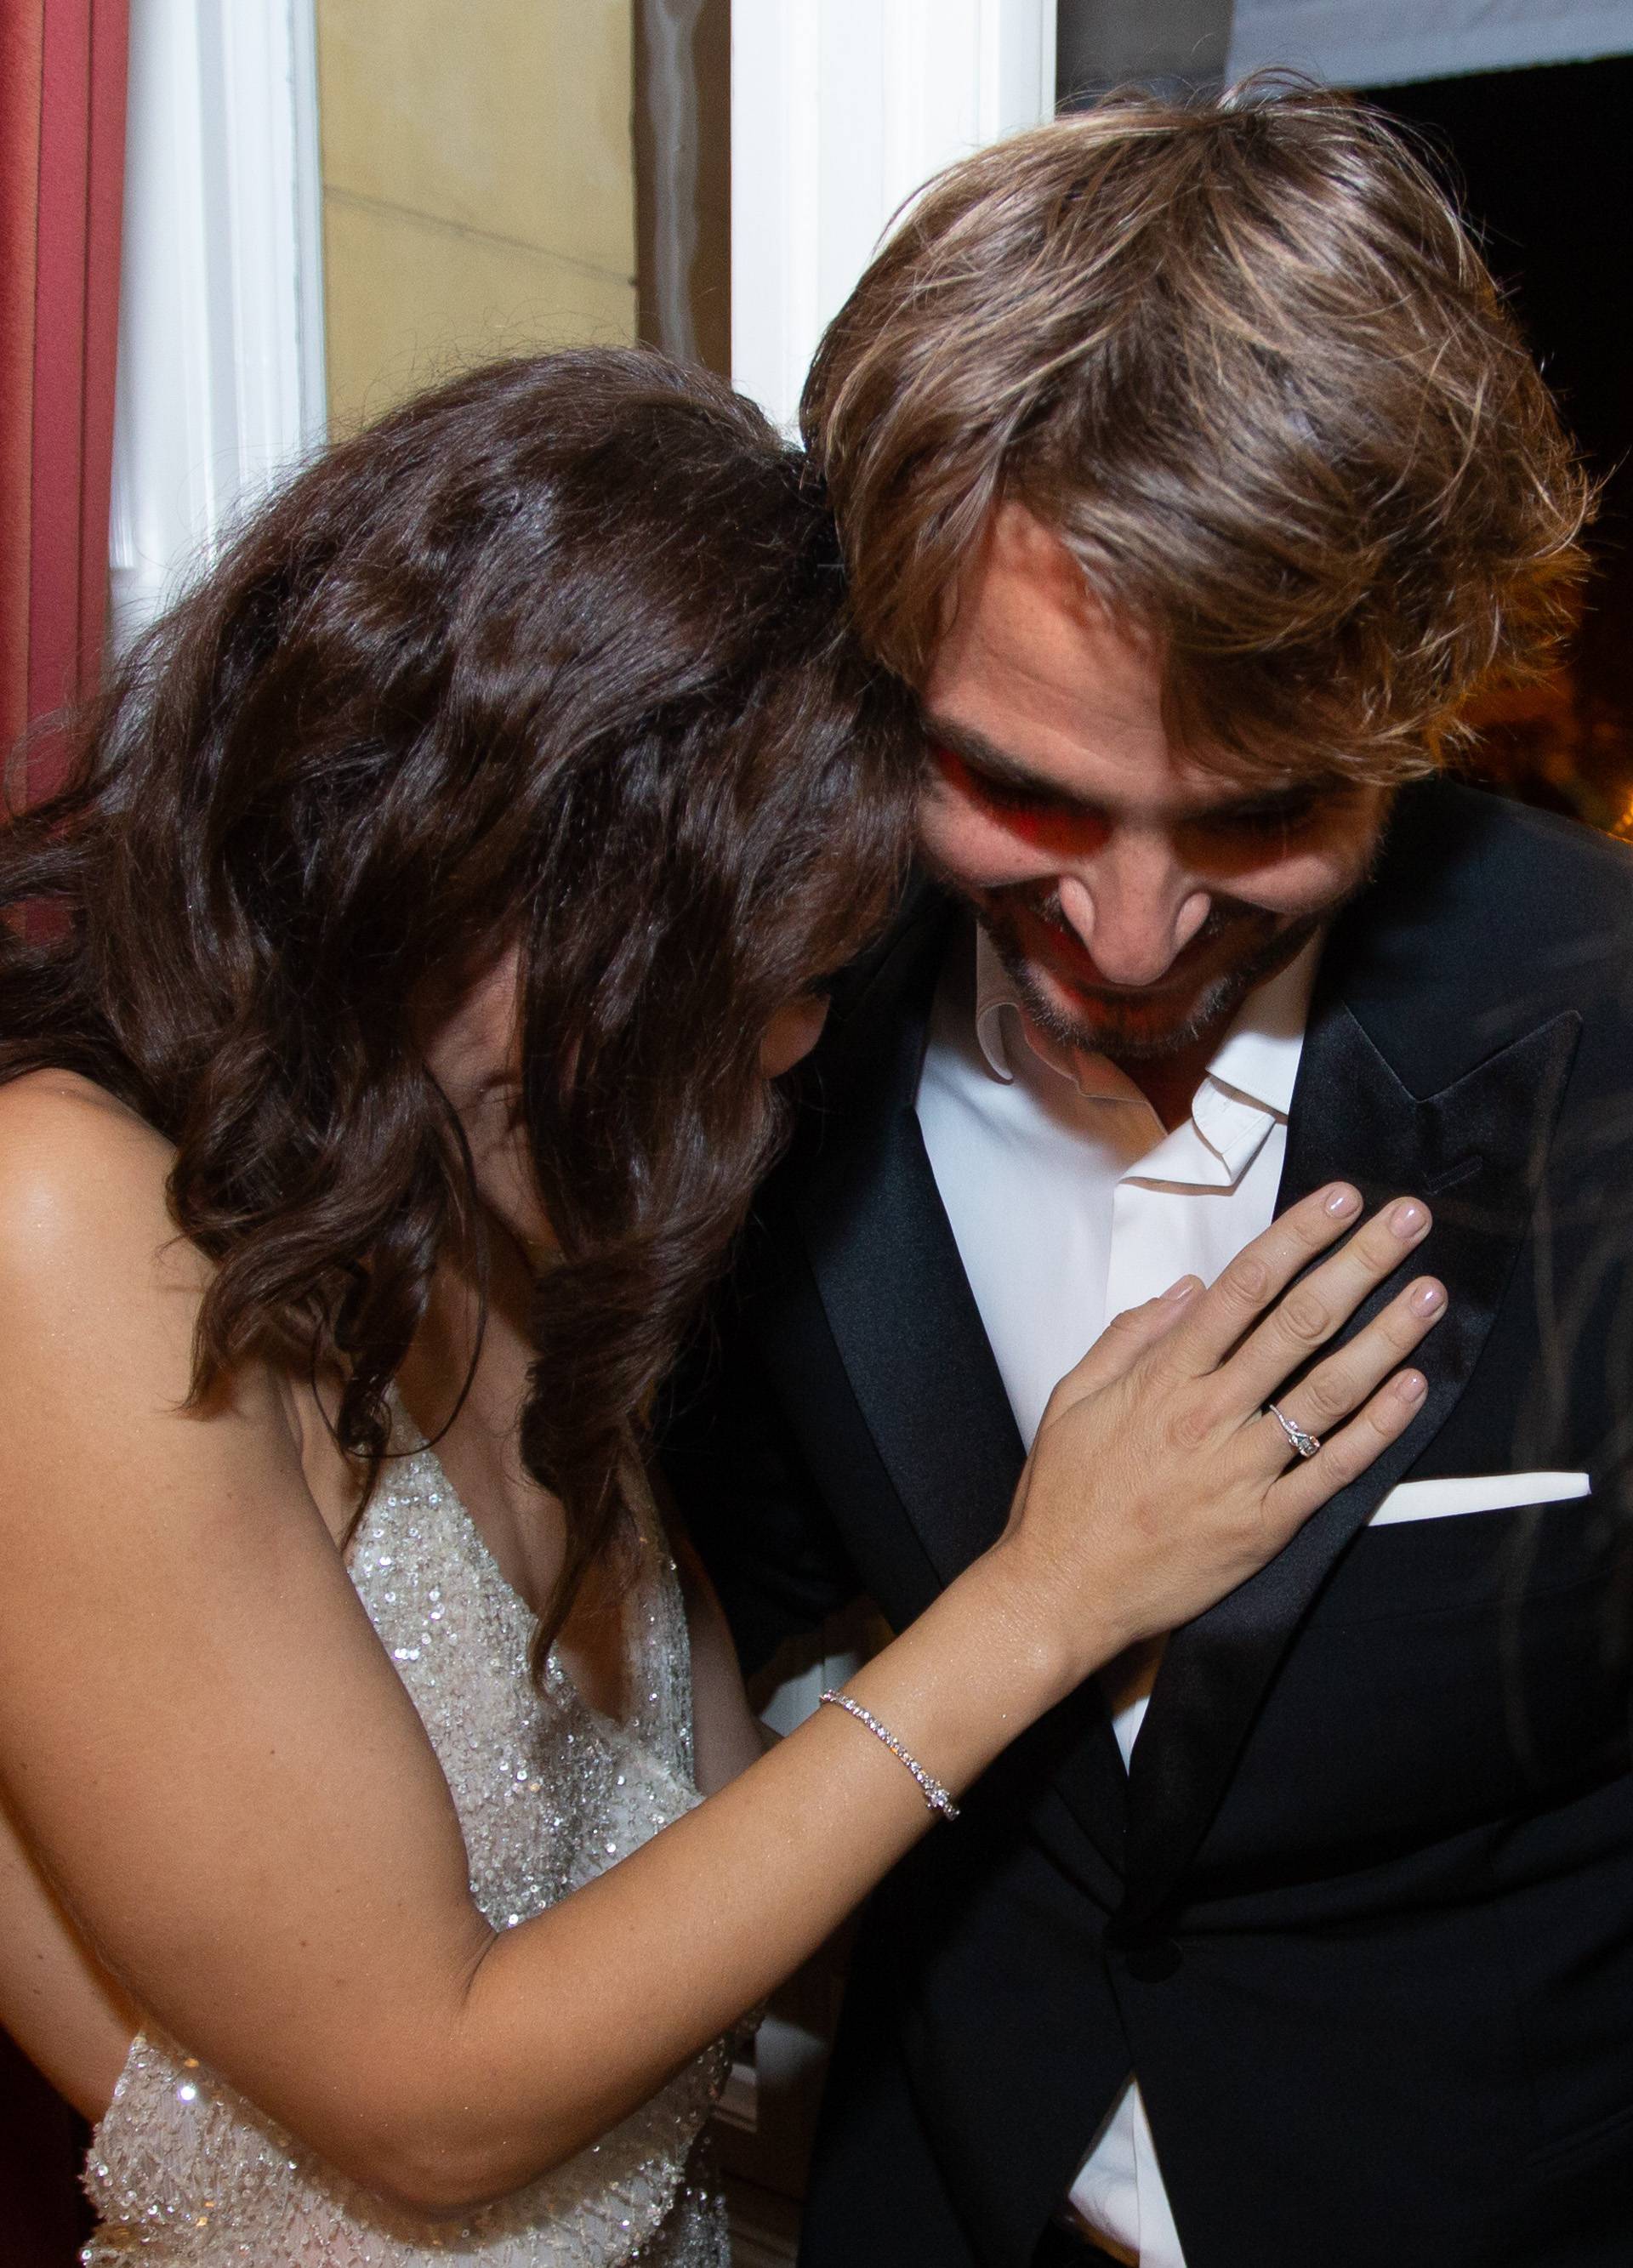 Ljubav je u zraku: Niko i Zrinka se grlili i ljubili nakon premijere